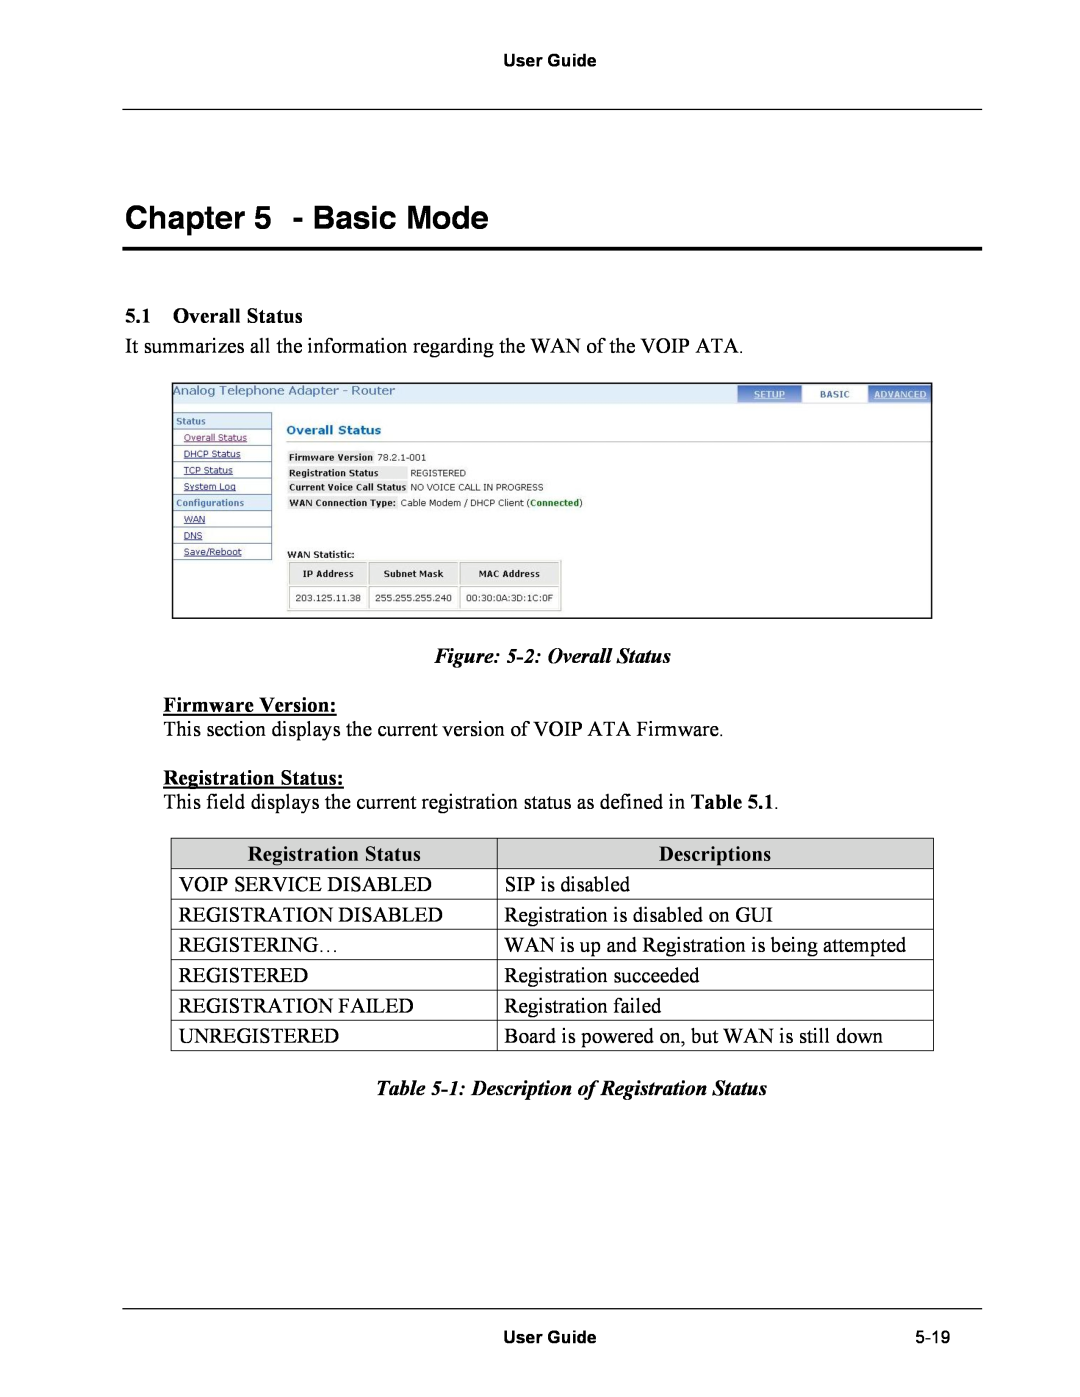 Netopia Network Adapater manual Basic Mode, 2 Overall Status, Firmware Version, Registration Status, Descriptions 